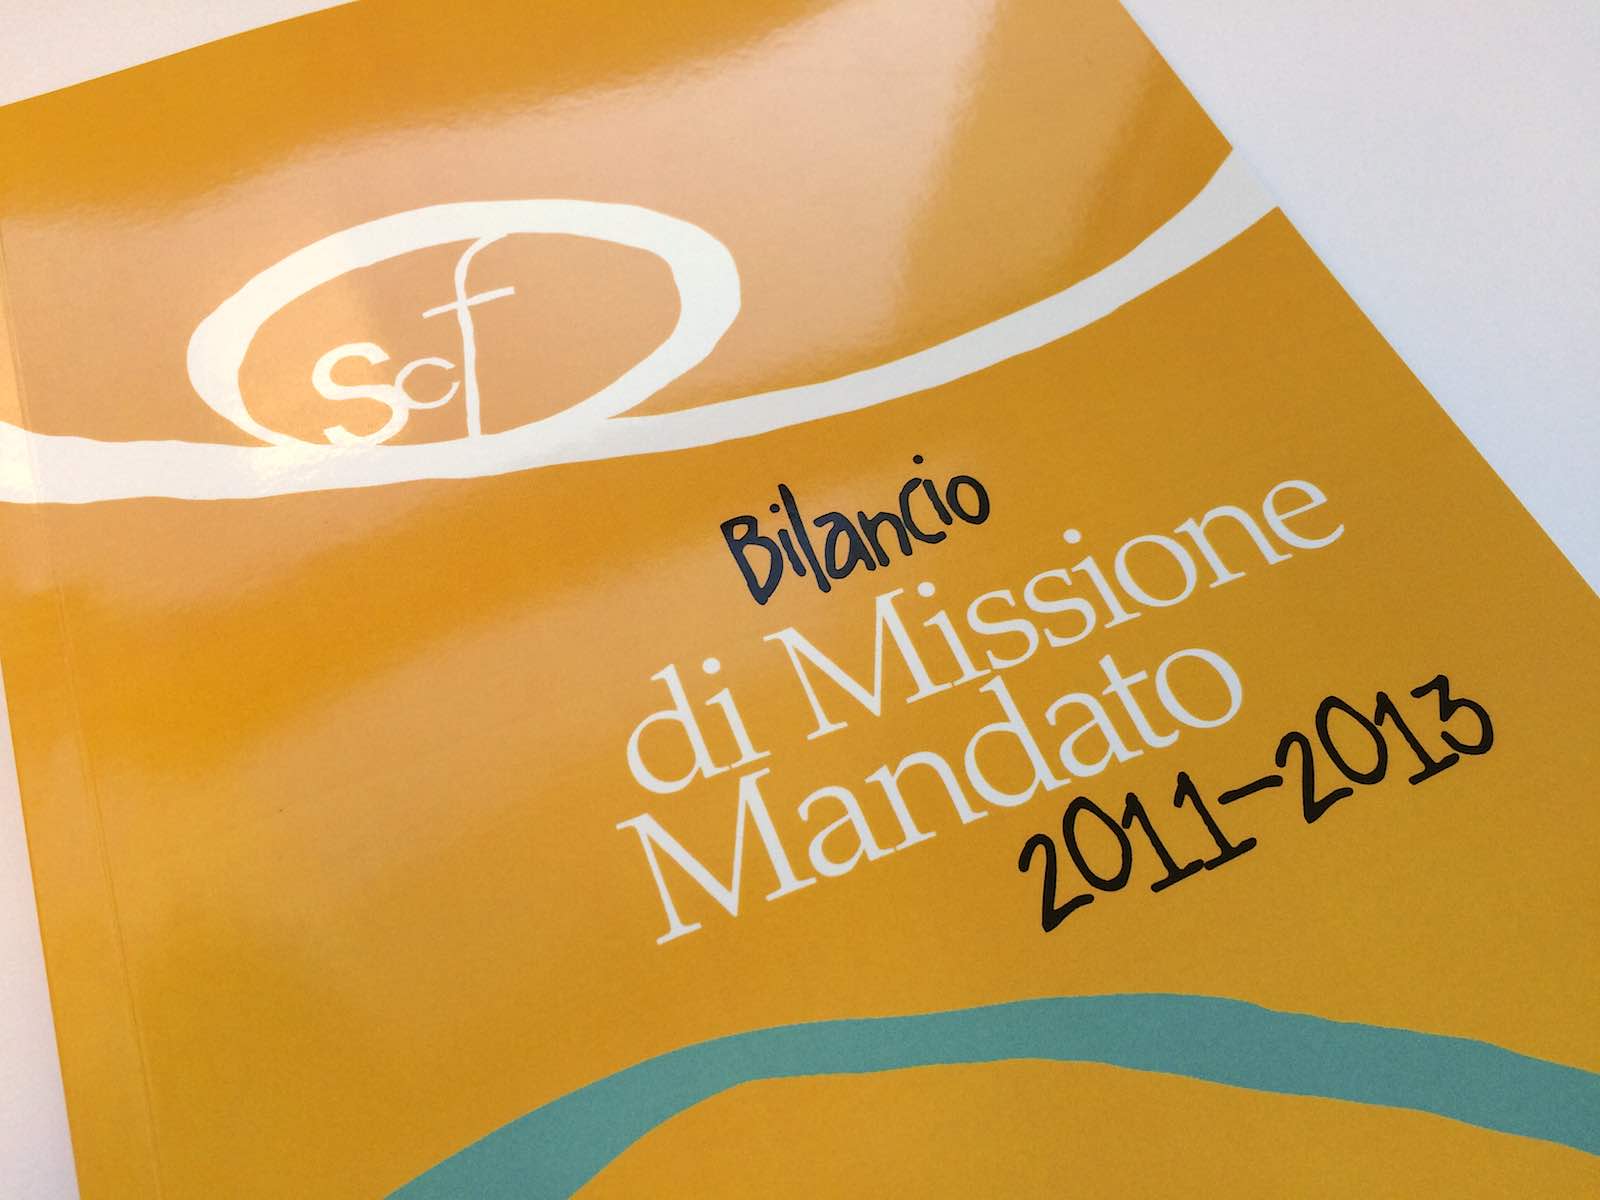 Bilancio di Missione Mandato 2011-2013